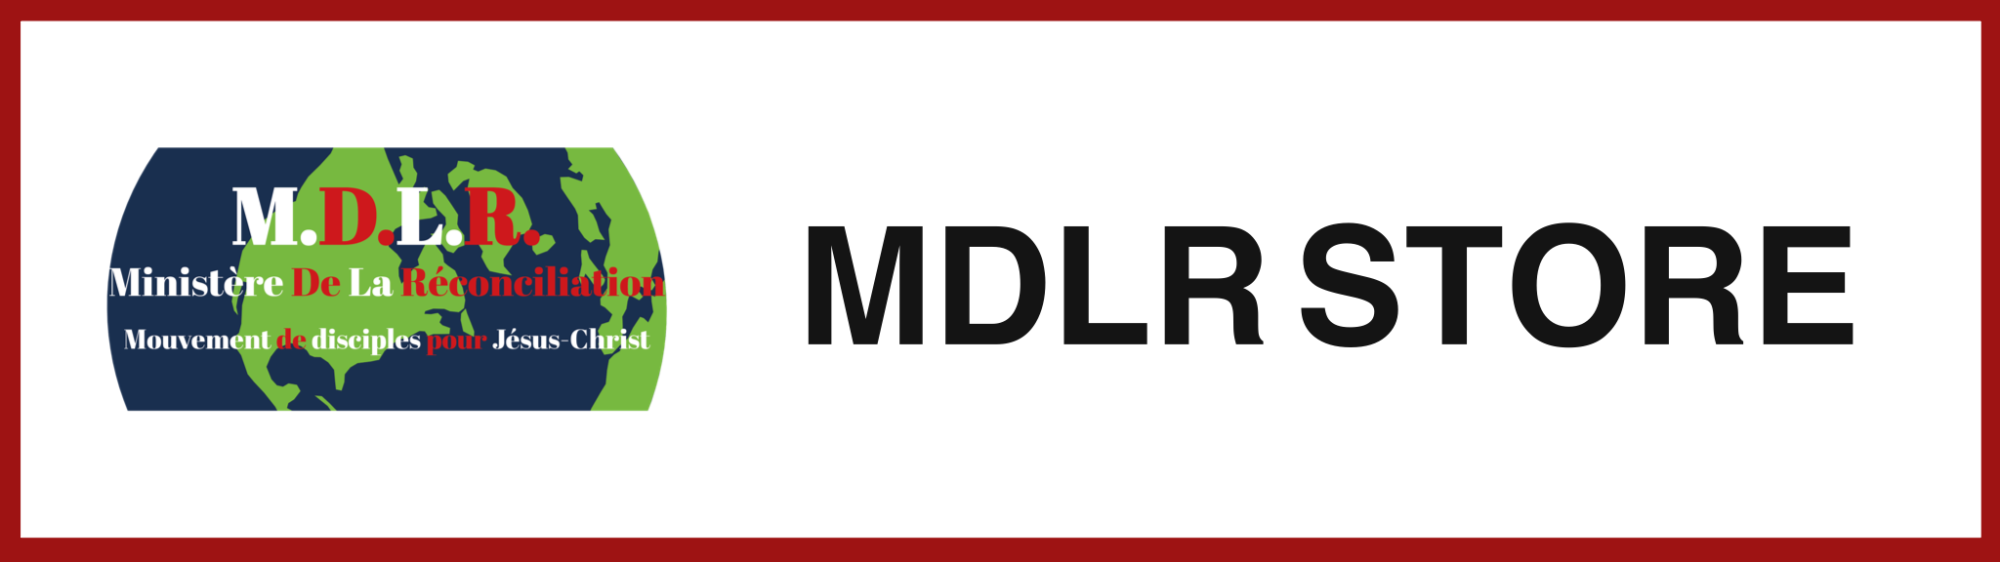 MDLR STORE - MINISTERE DE LA RECONCILIATION